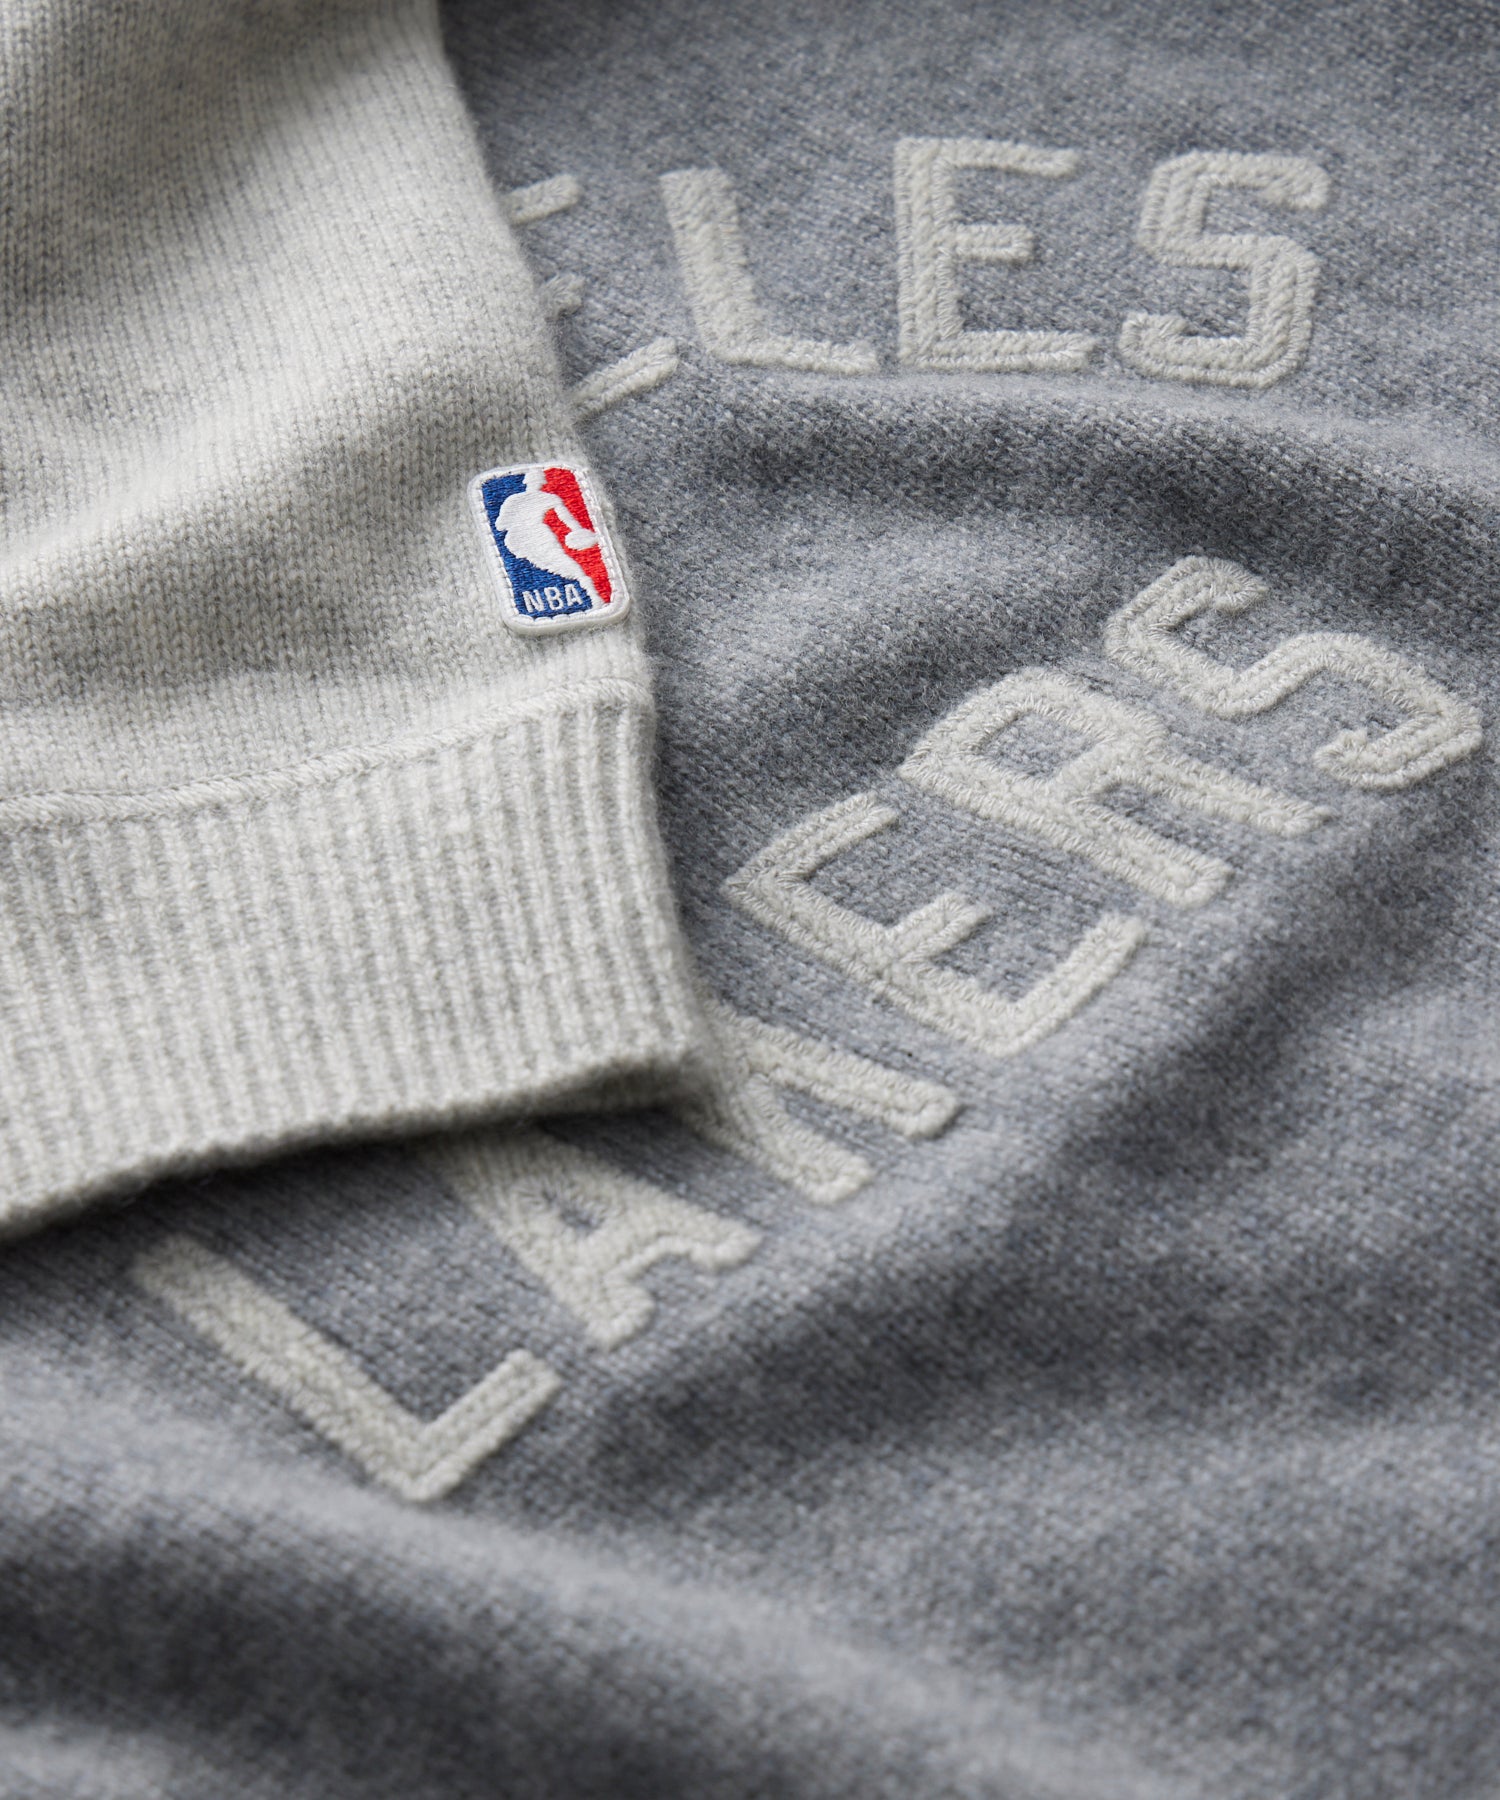 Los Angeles Lakers Fan Sweaters for sale